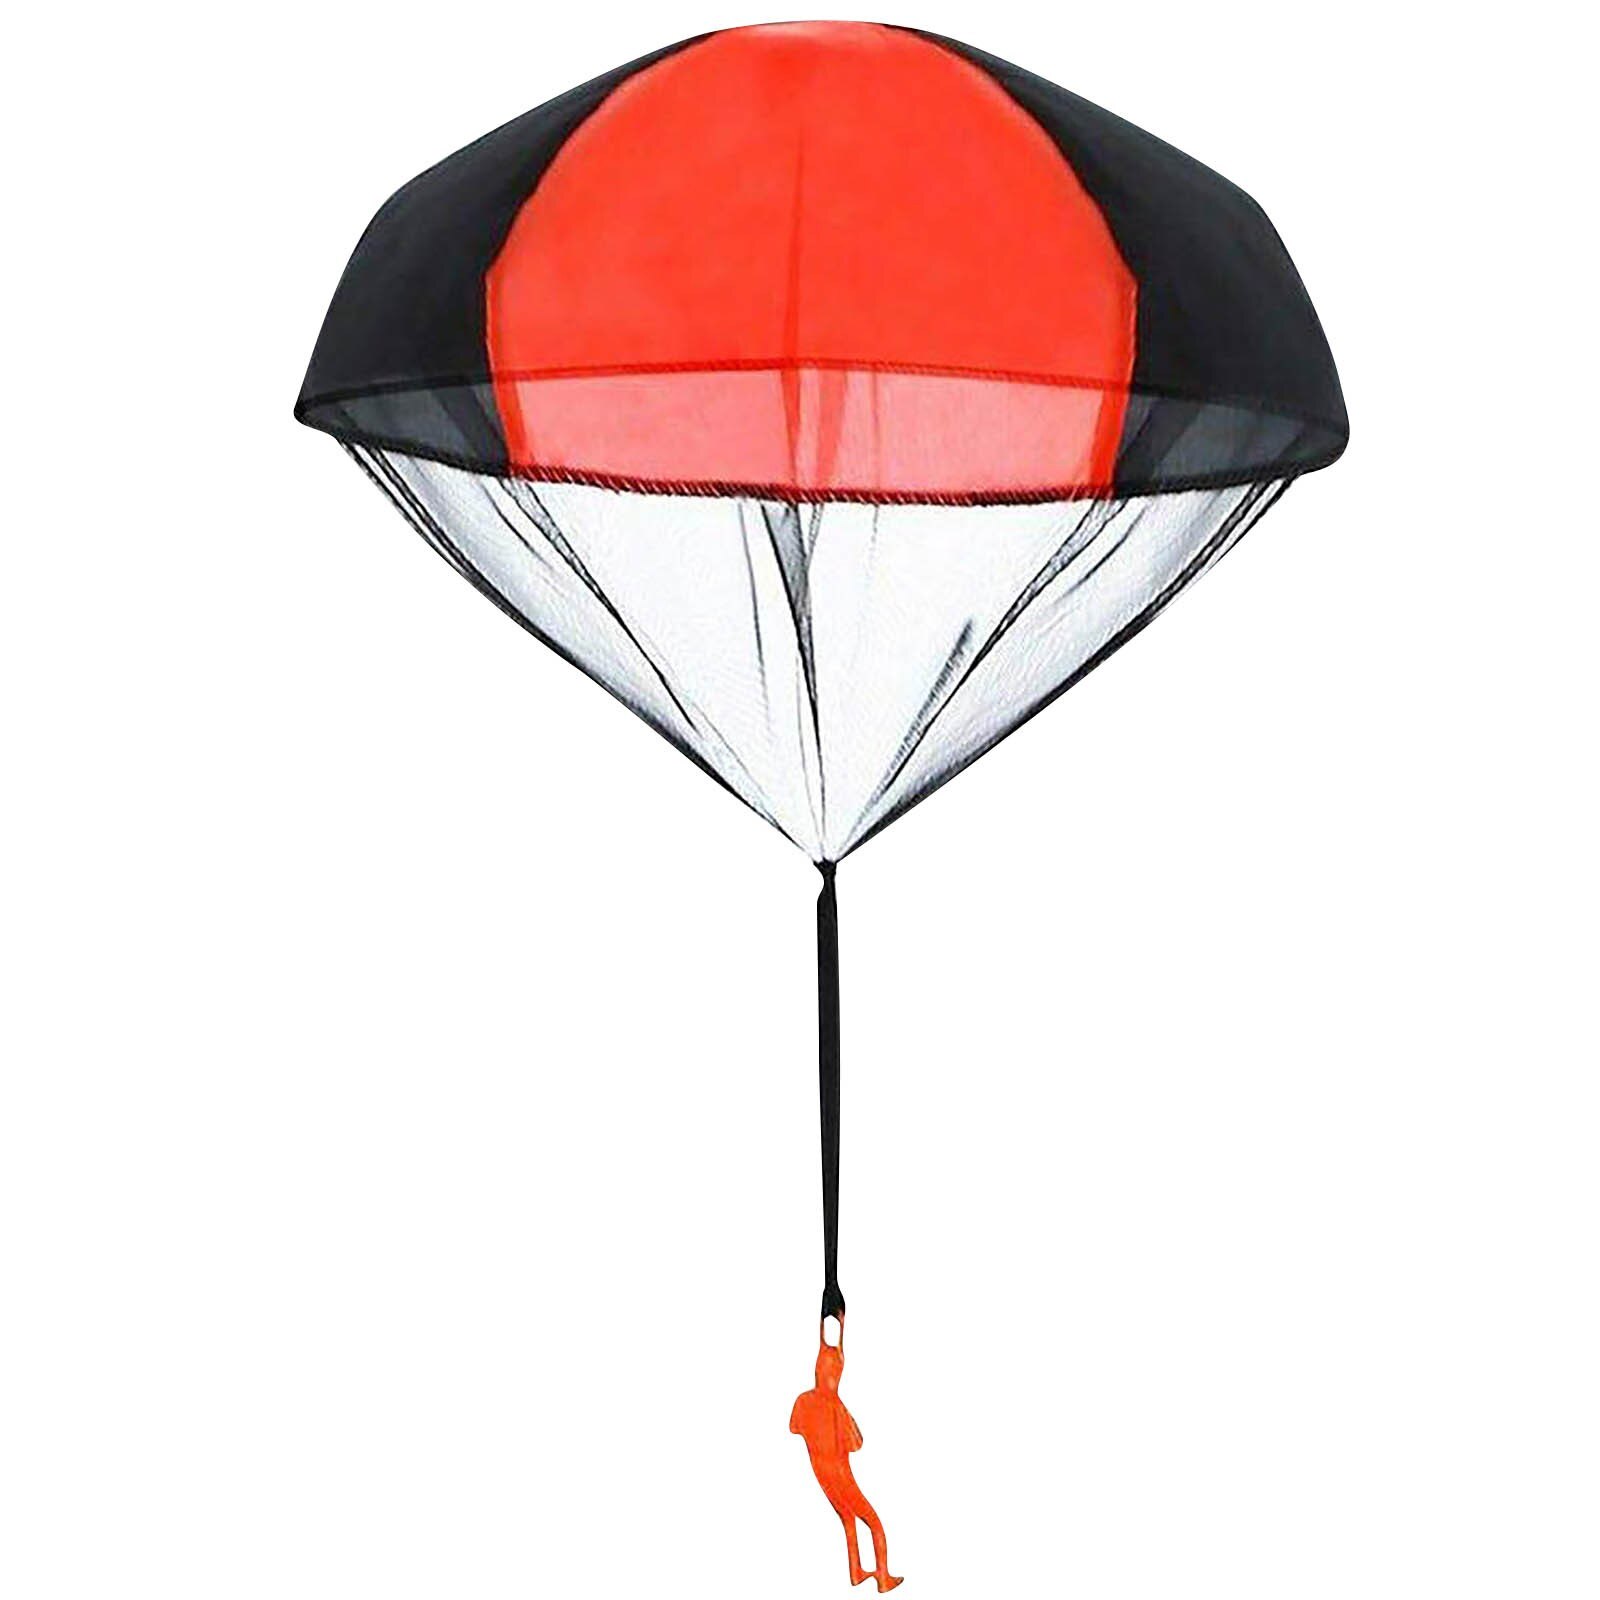 Hand Gooien Parachute Kids Outdoor Grappig Speelgoed Spel Educatief Speelgoed Voor Kinderen Vliegen Parachute Sport Mini Soldaat Speelgoed